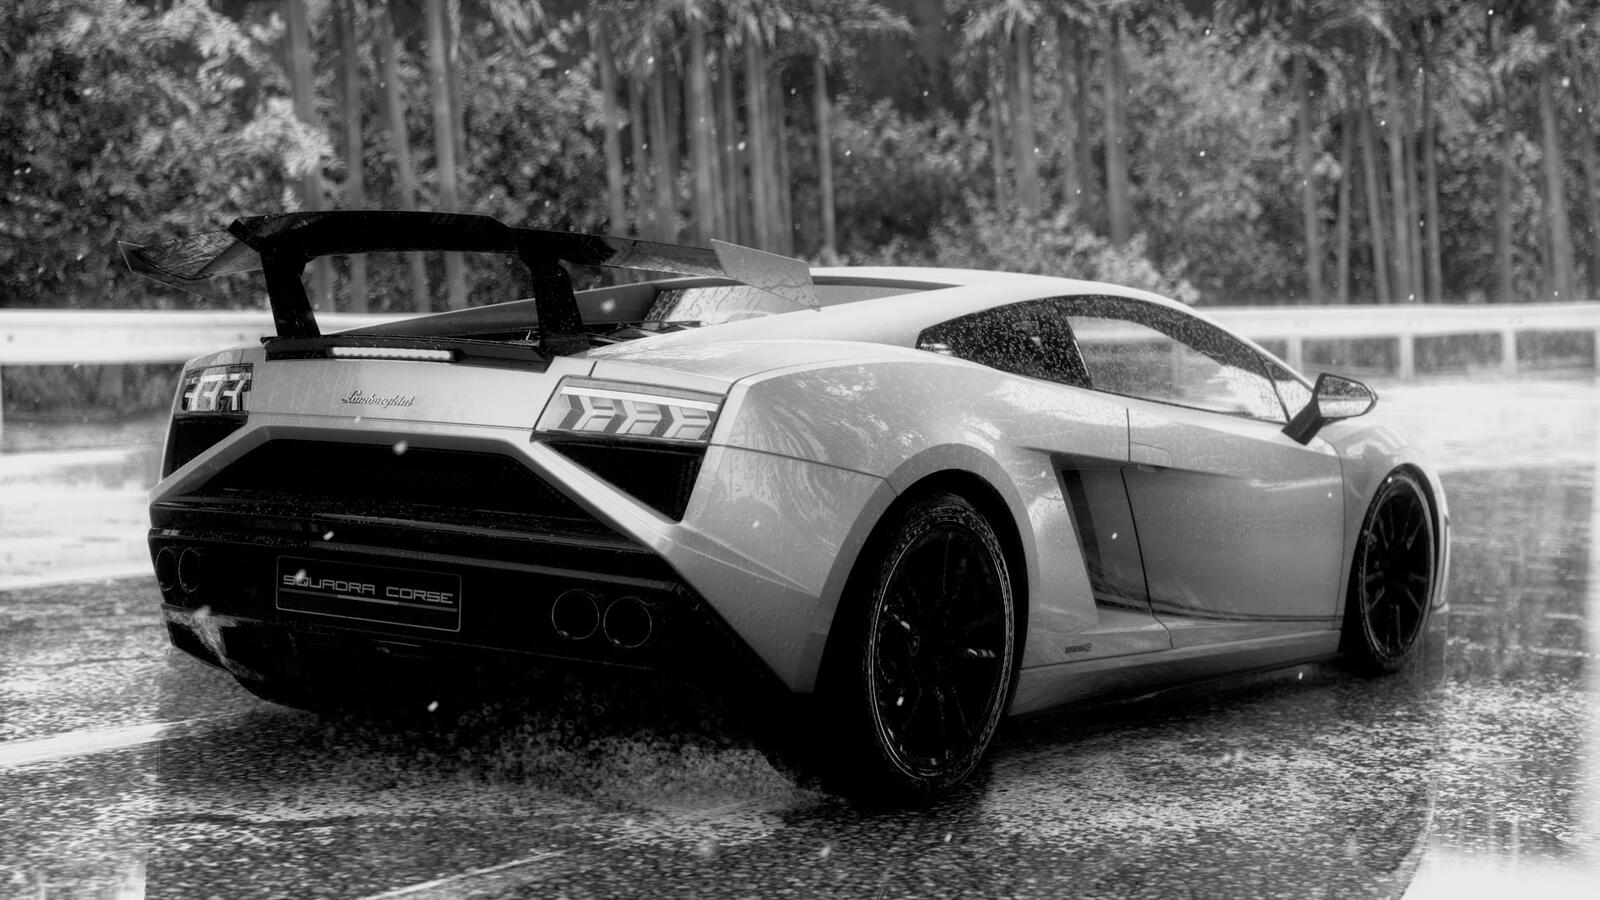 Free photo Monochrome picture of a Lamborghini Gallardo.